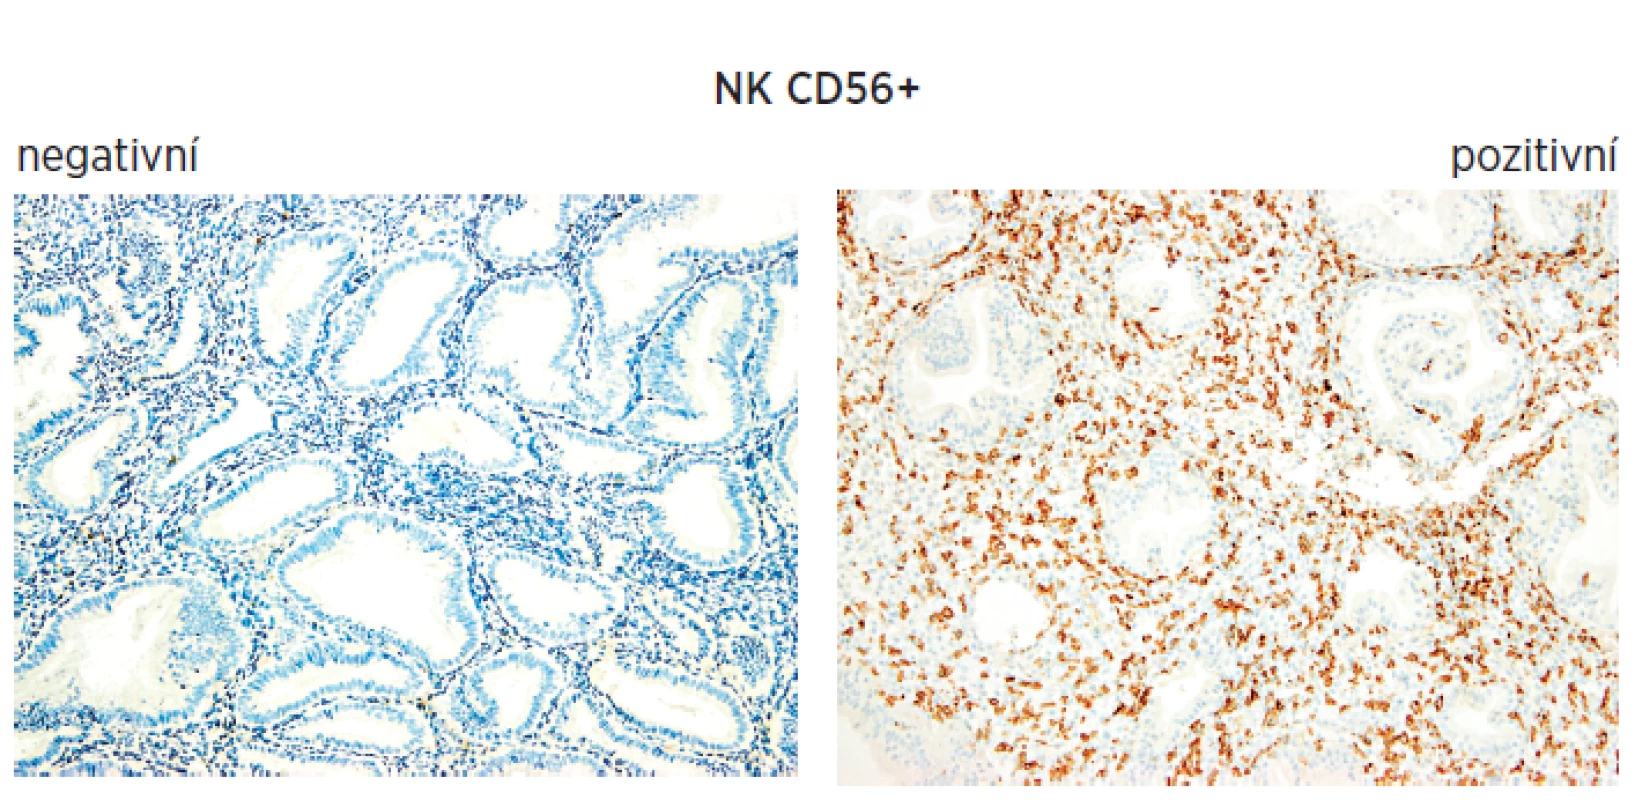 Immunohistochemie endometria při sledování NK bb CD56+